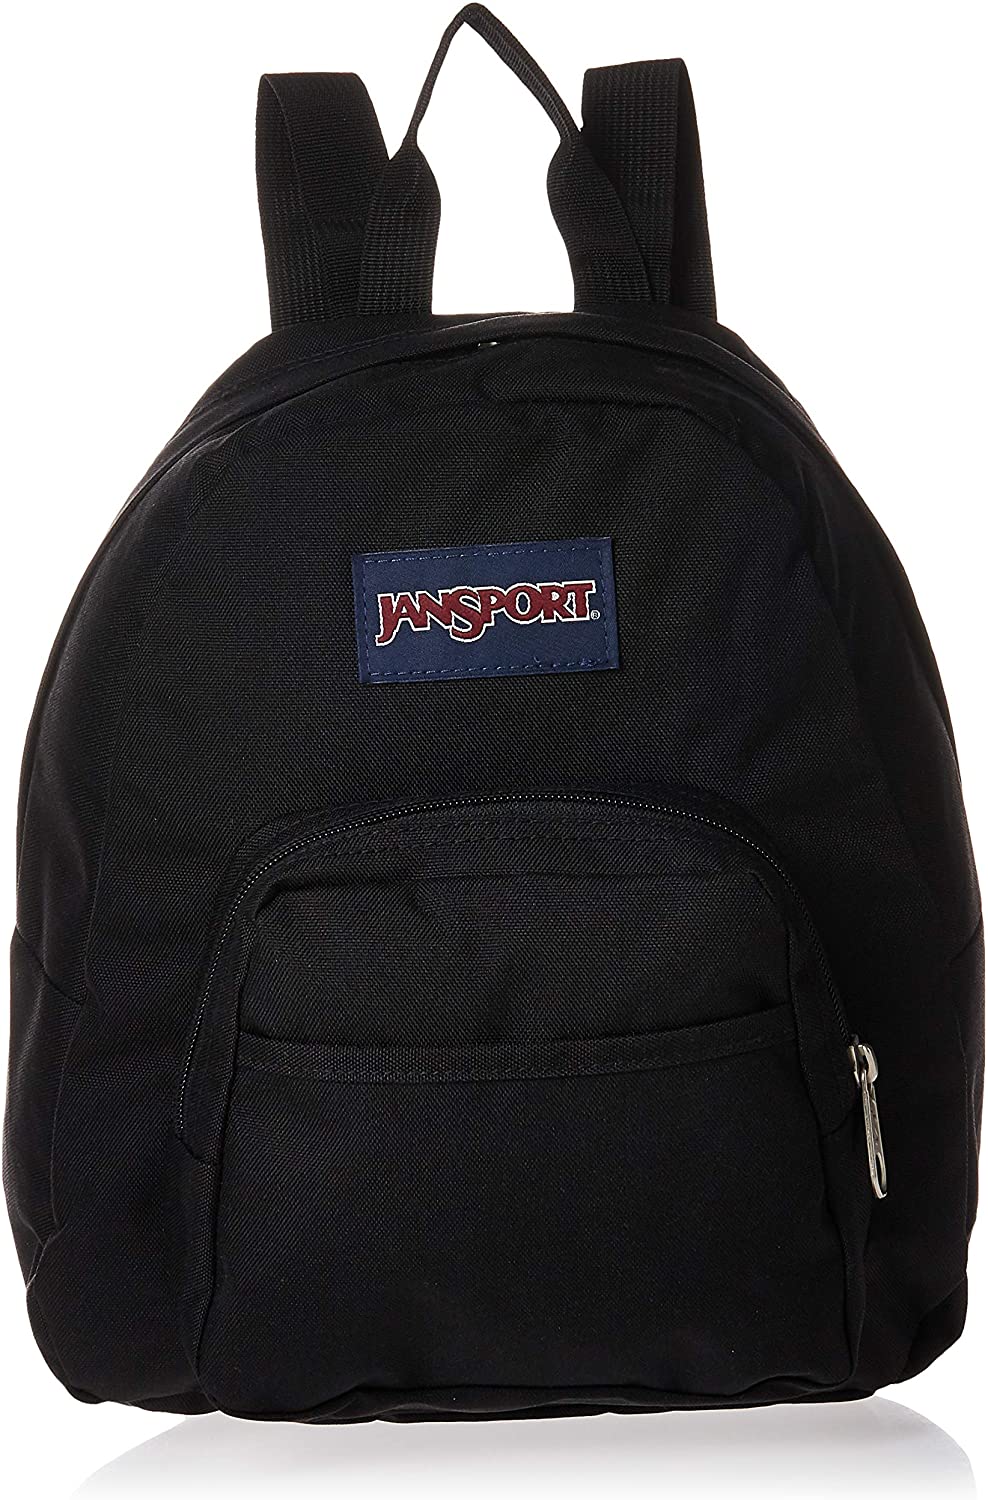 JanSport Half Pint 600 Denier Polyester Mini Backpack